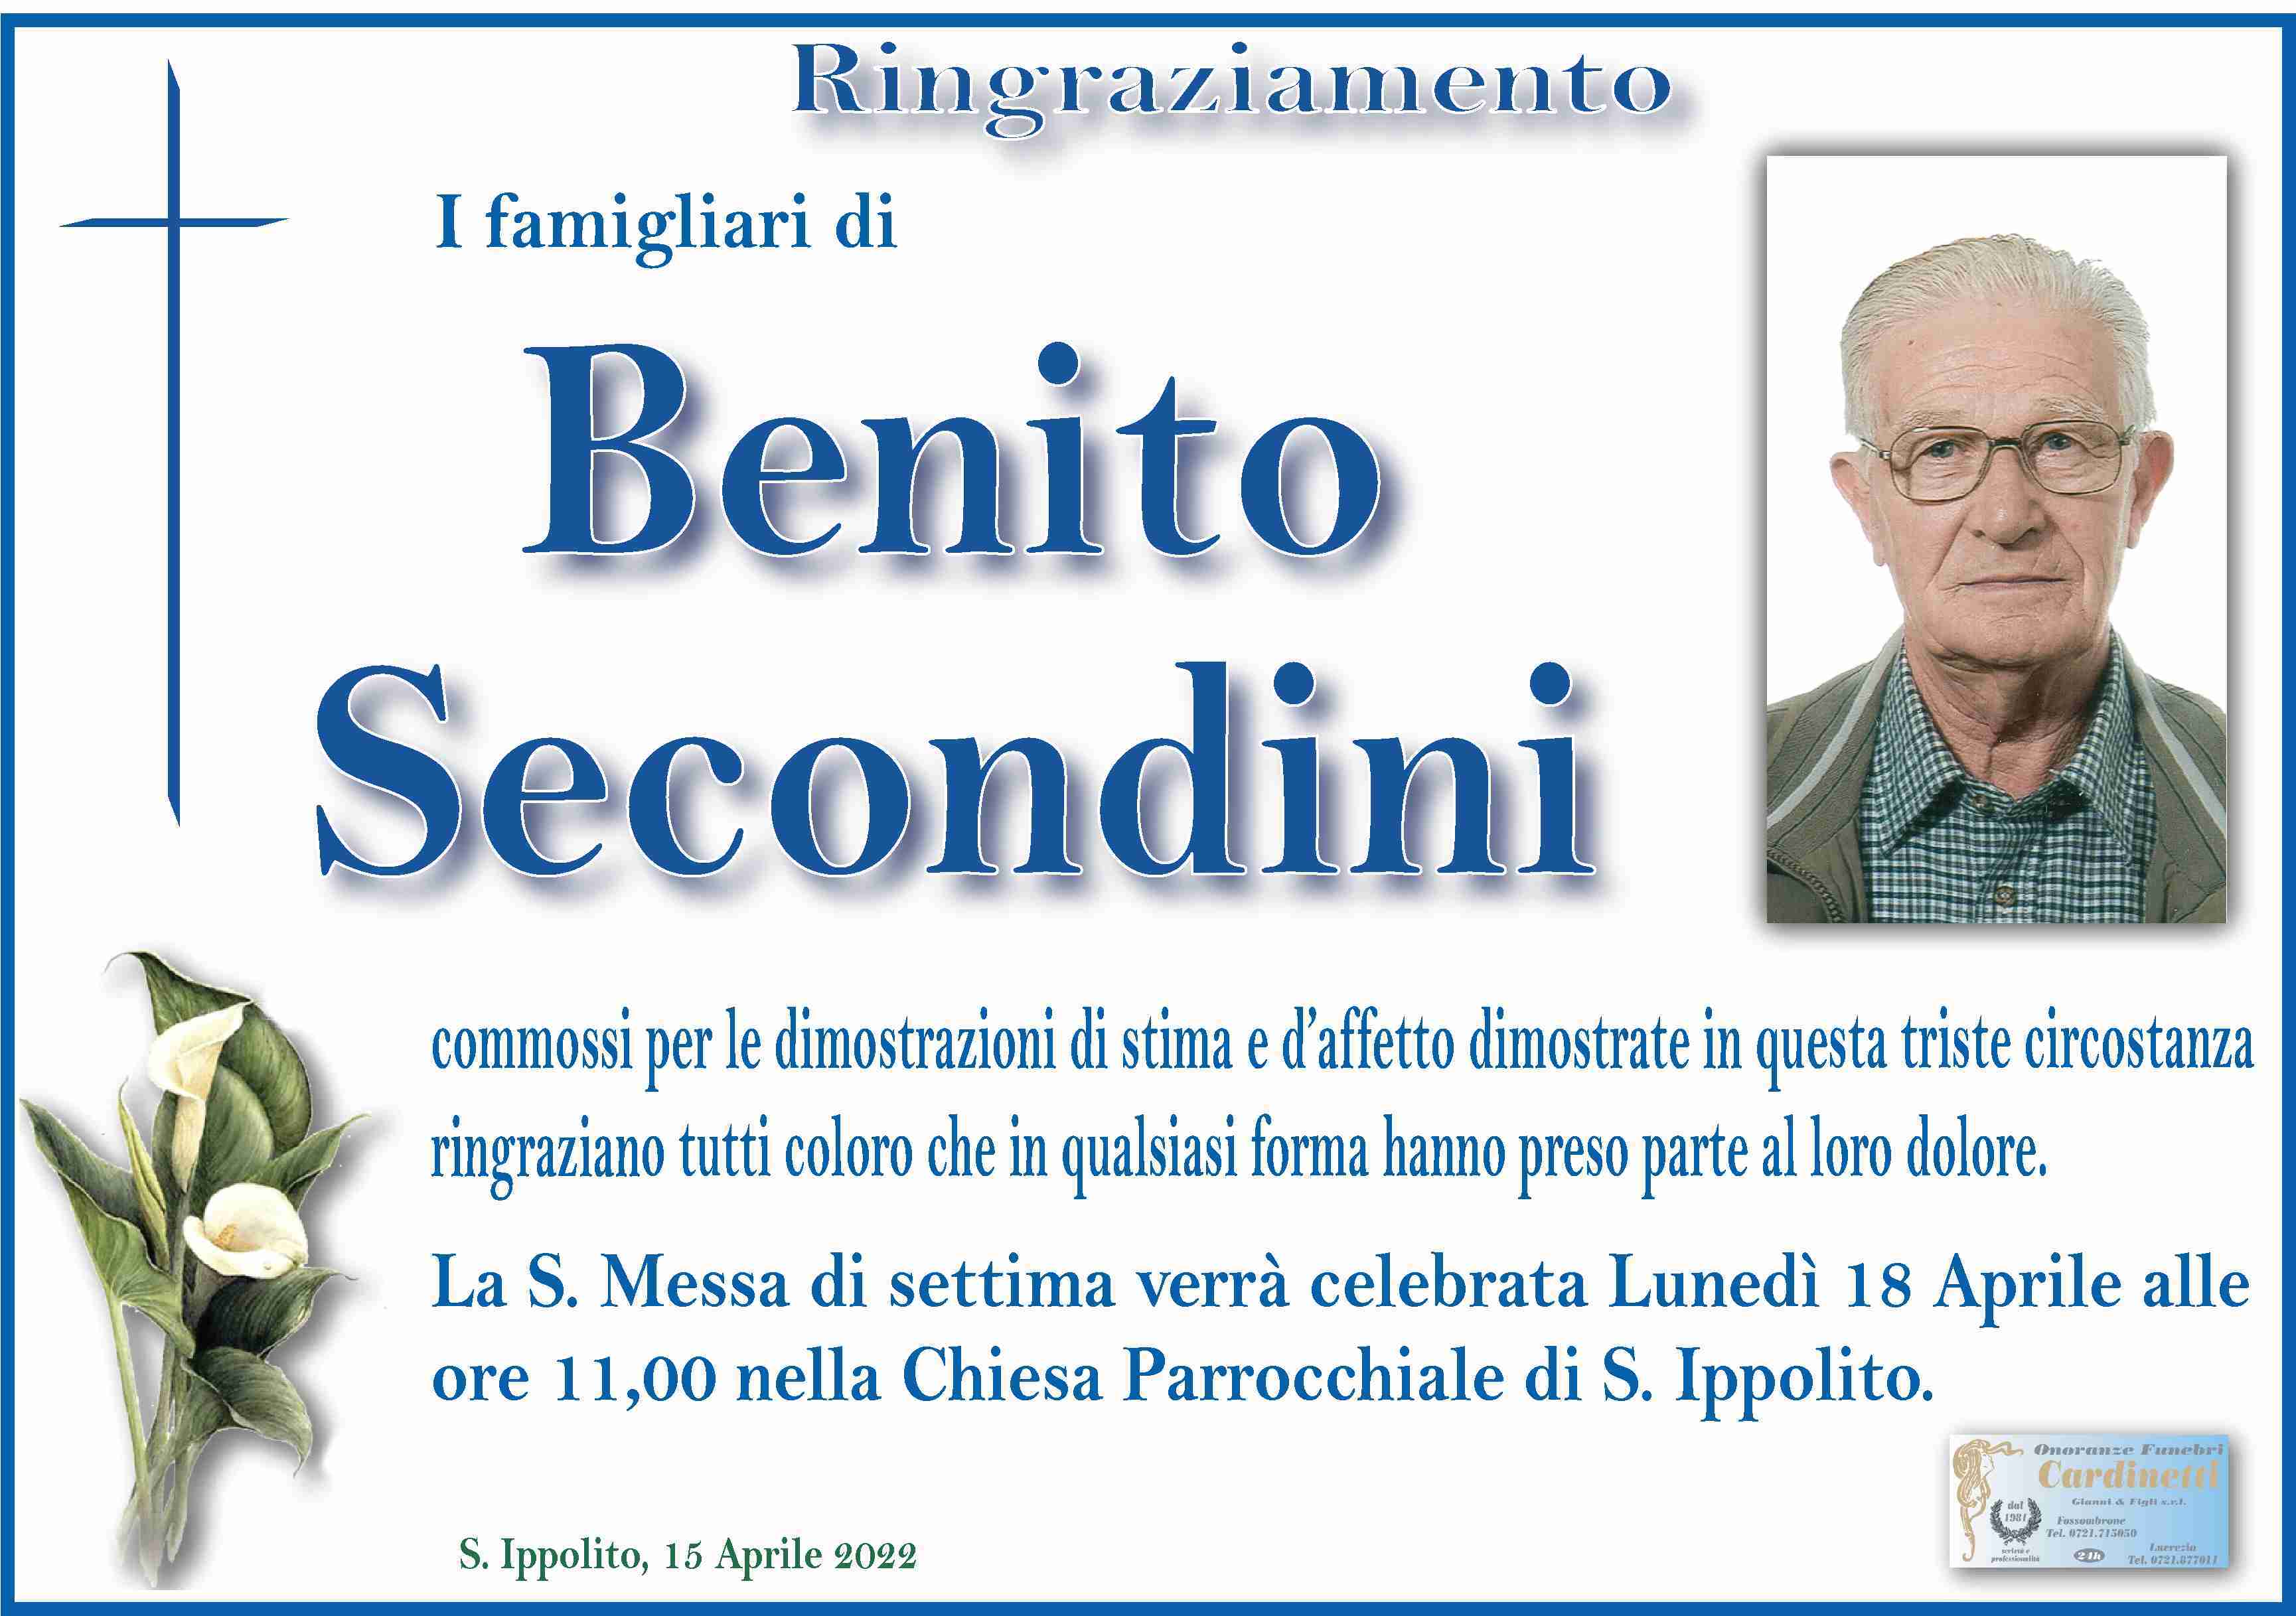 Benito Secondini